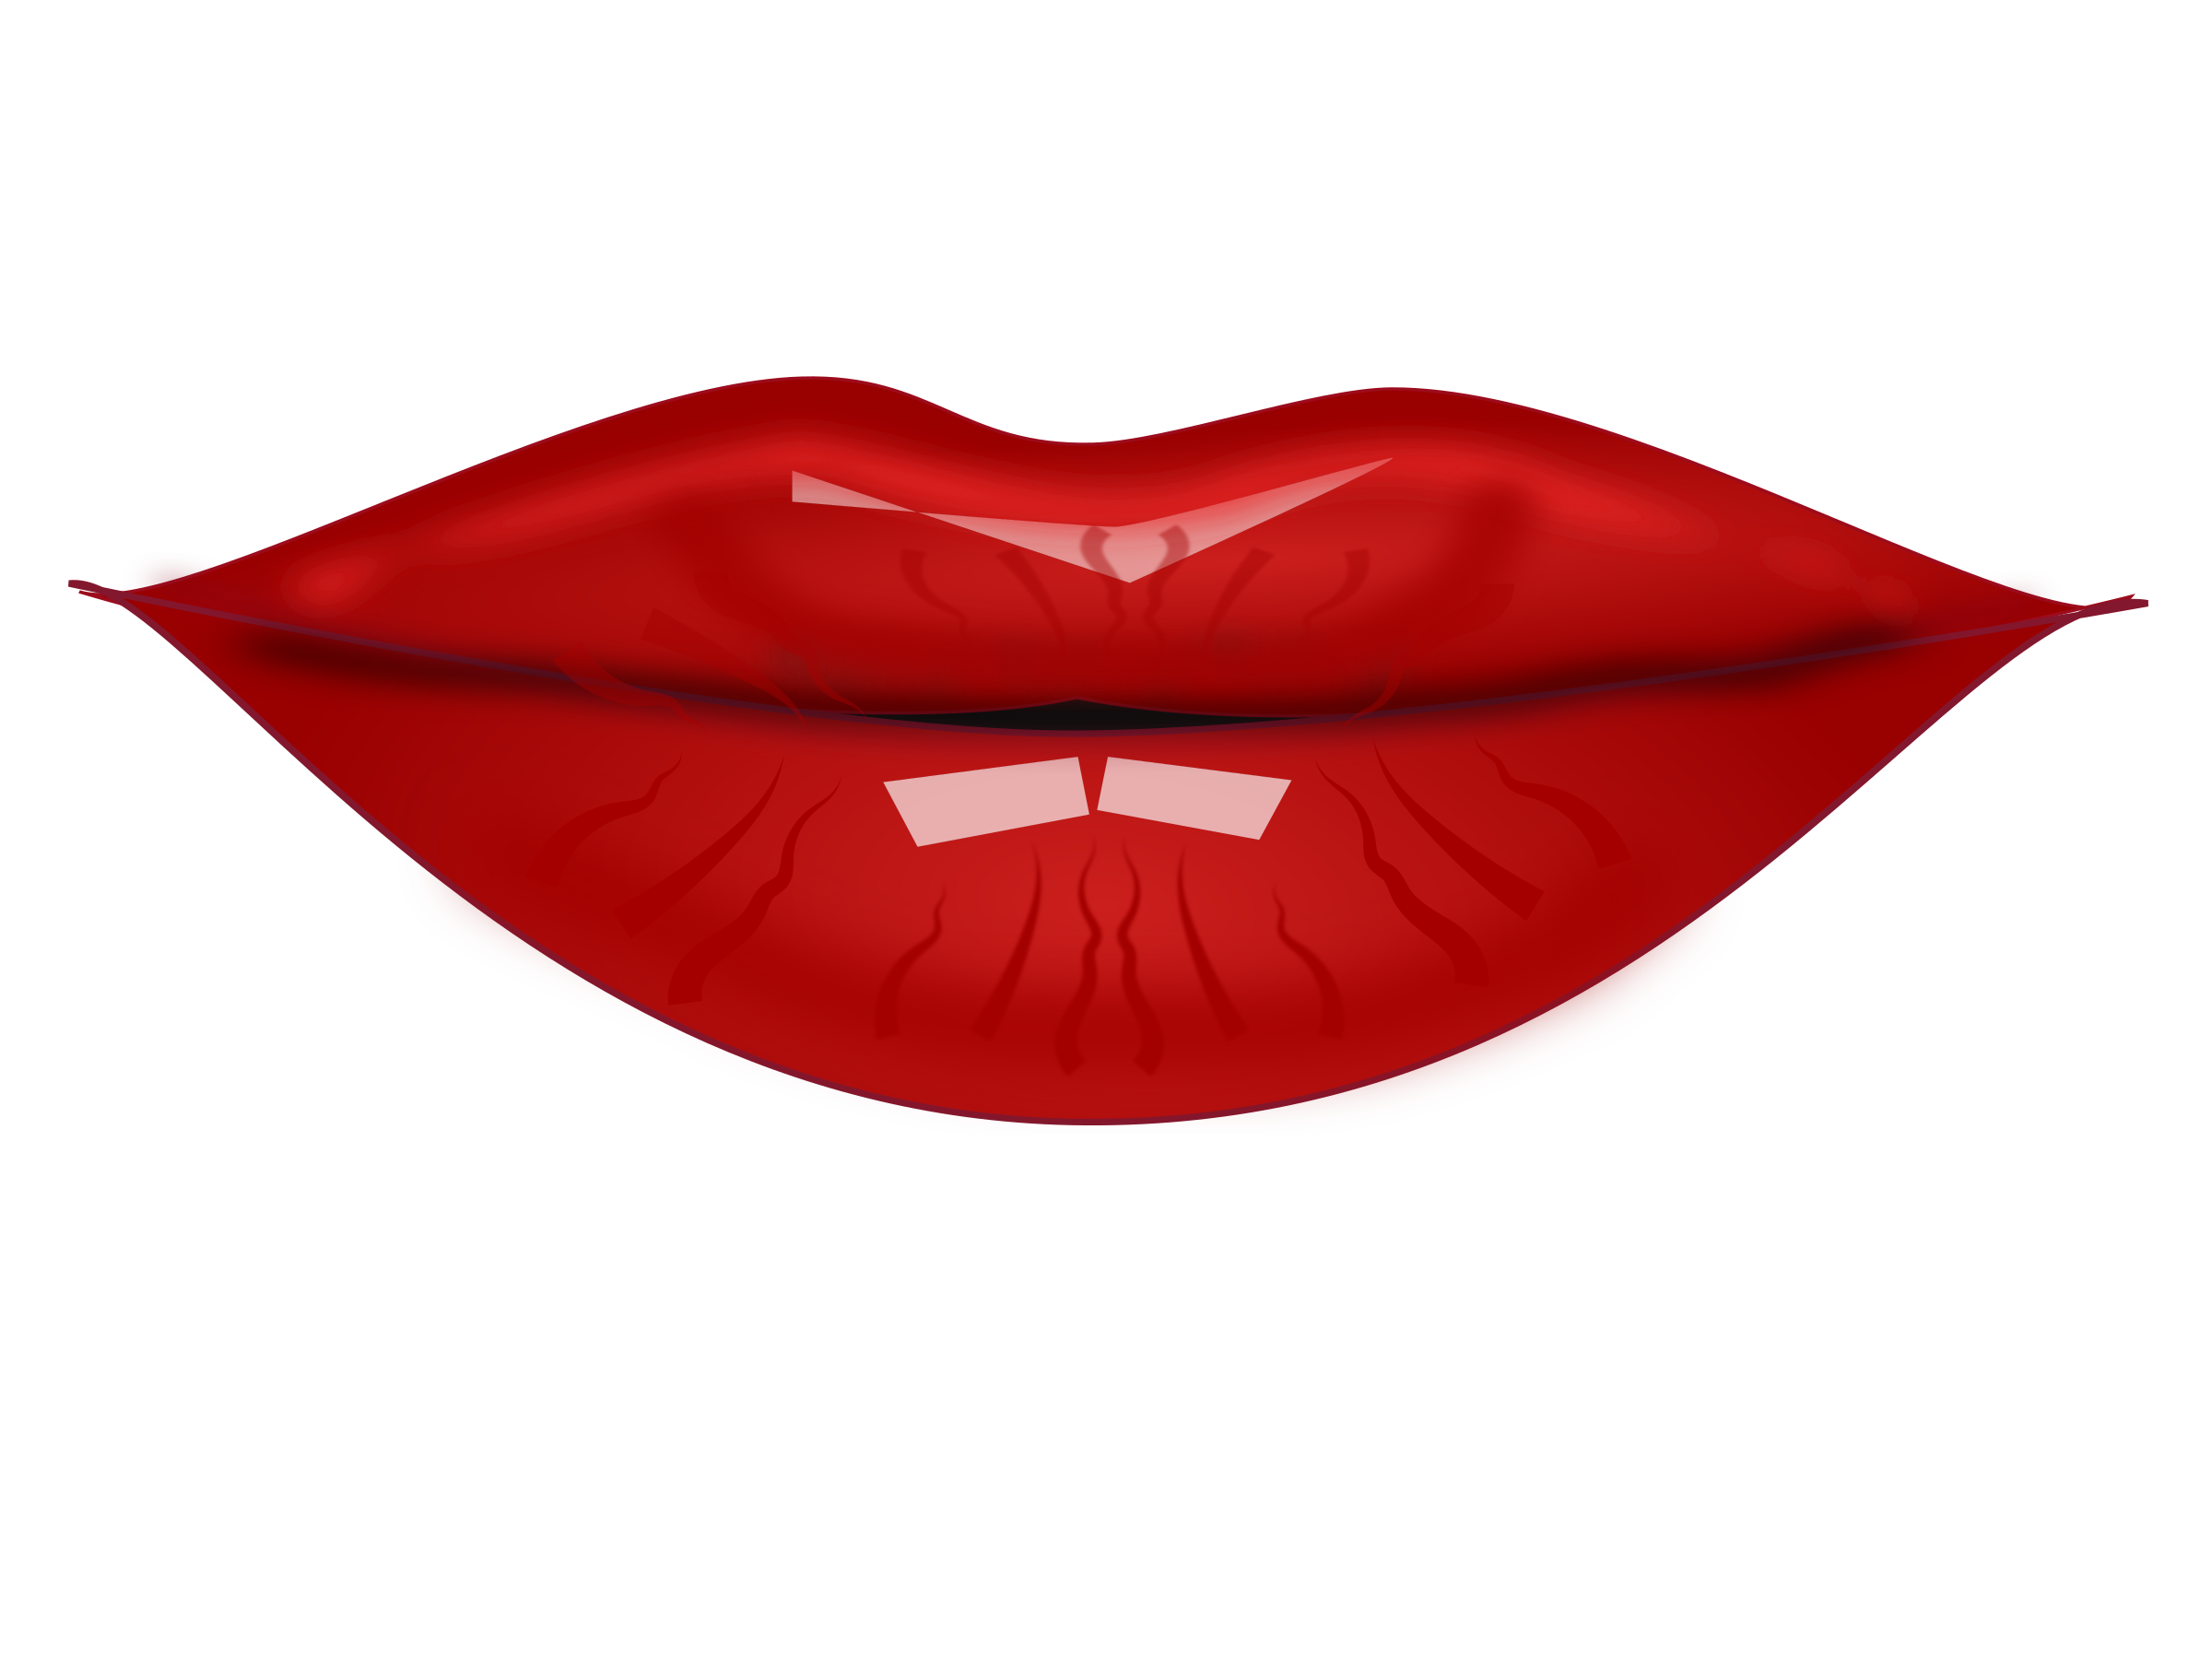 Clip art of lips - ClipartFox